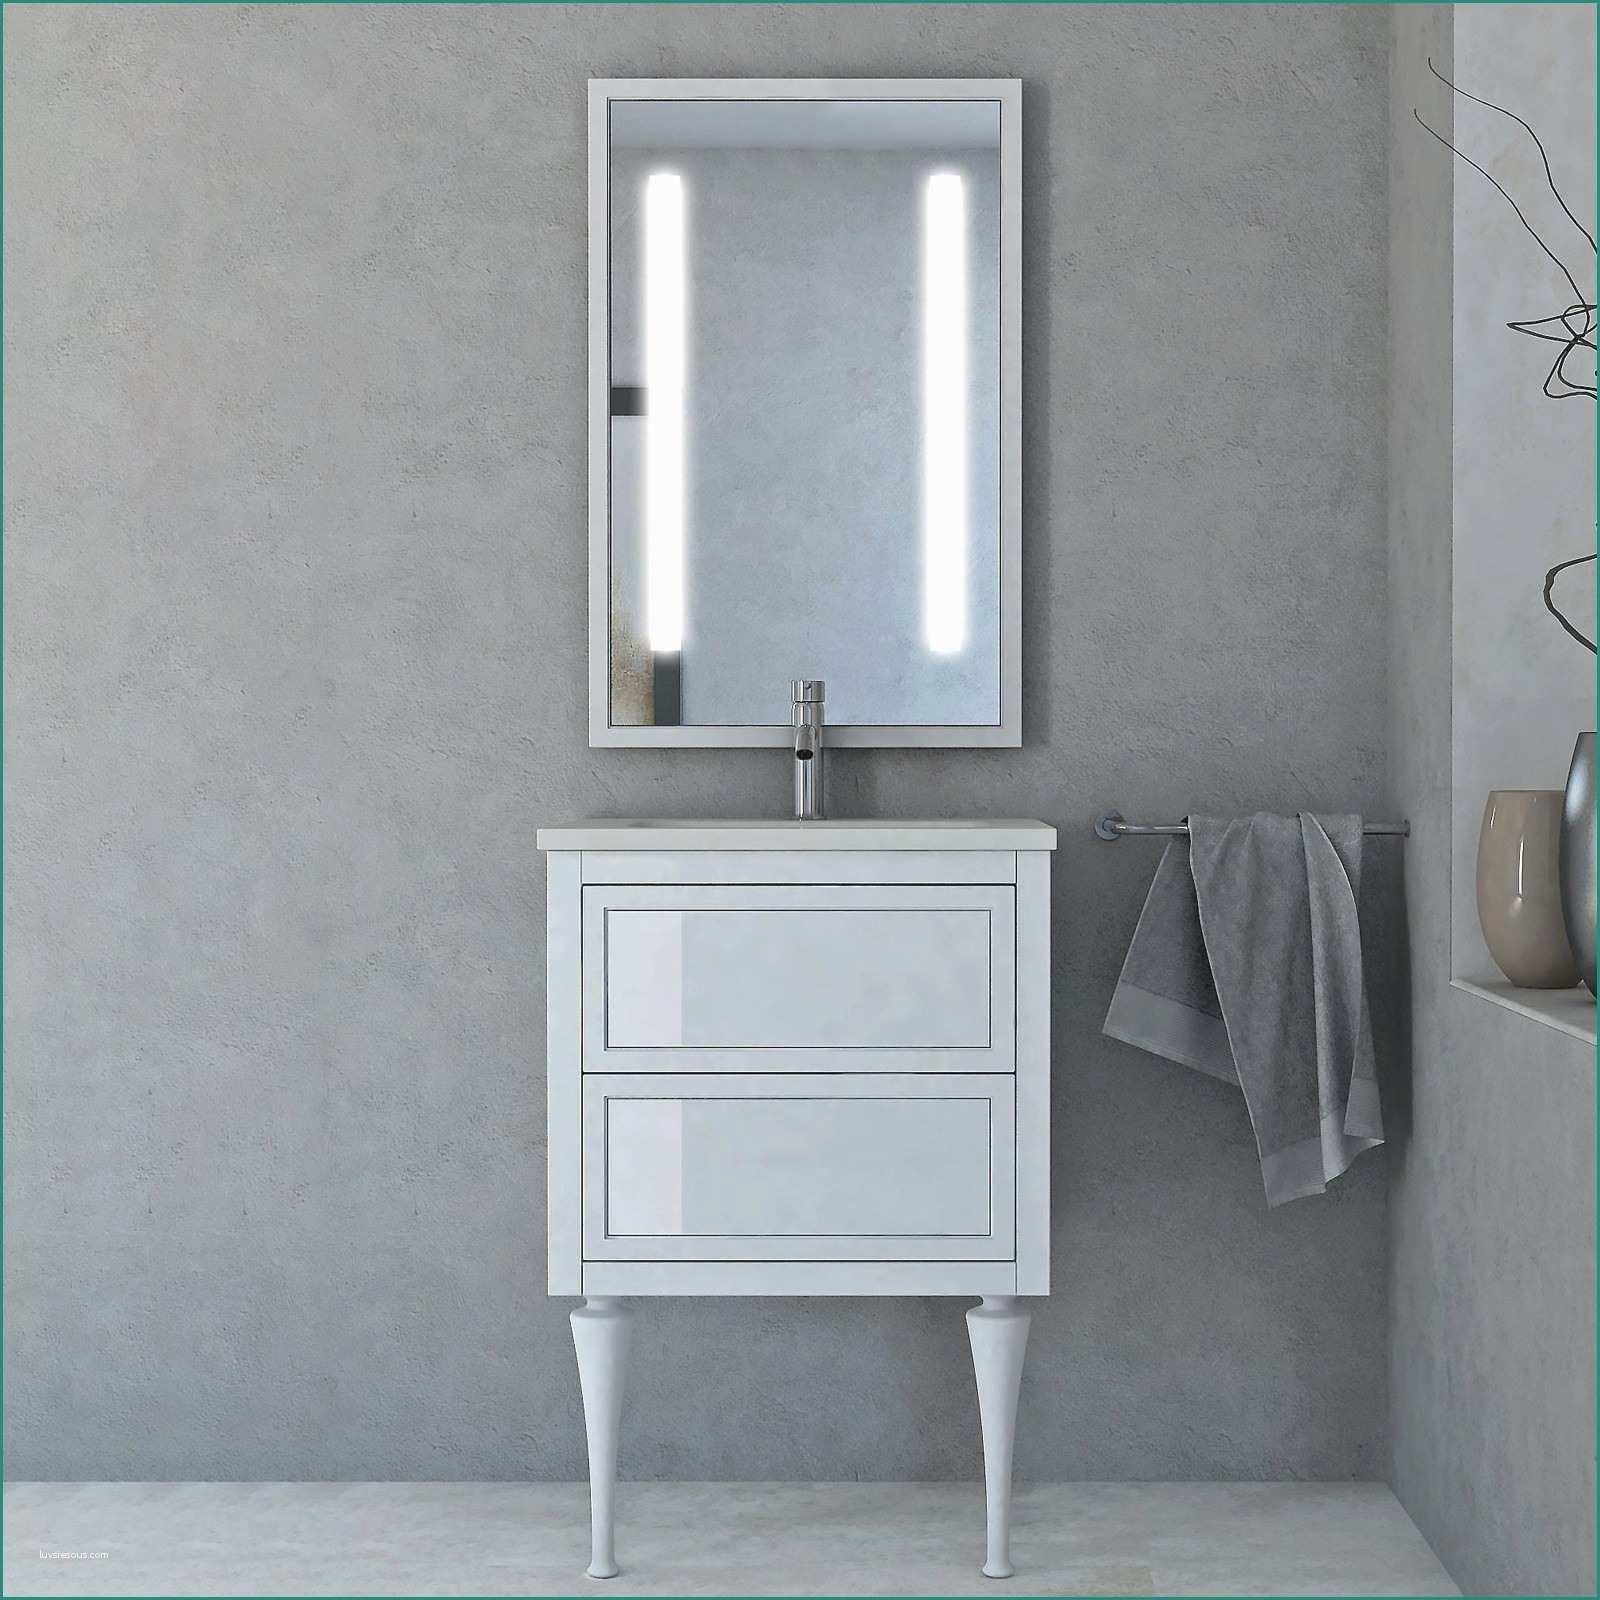 Lavabo Con Mobile Bagno E Specchi Da Arredo ispiratore Elegante Arredo Bagno Ikea Casa Design